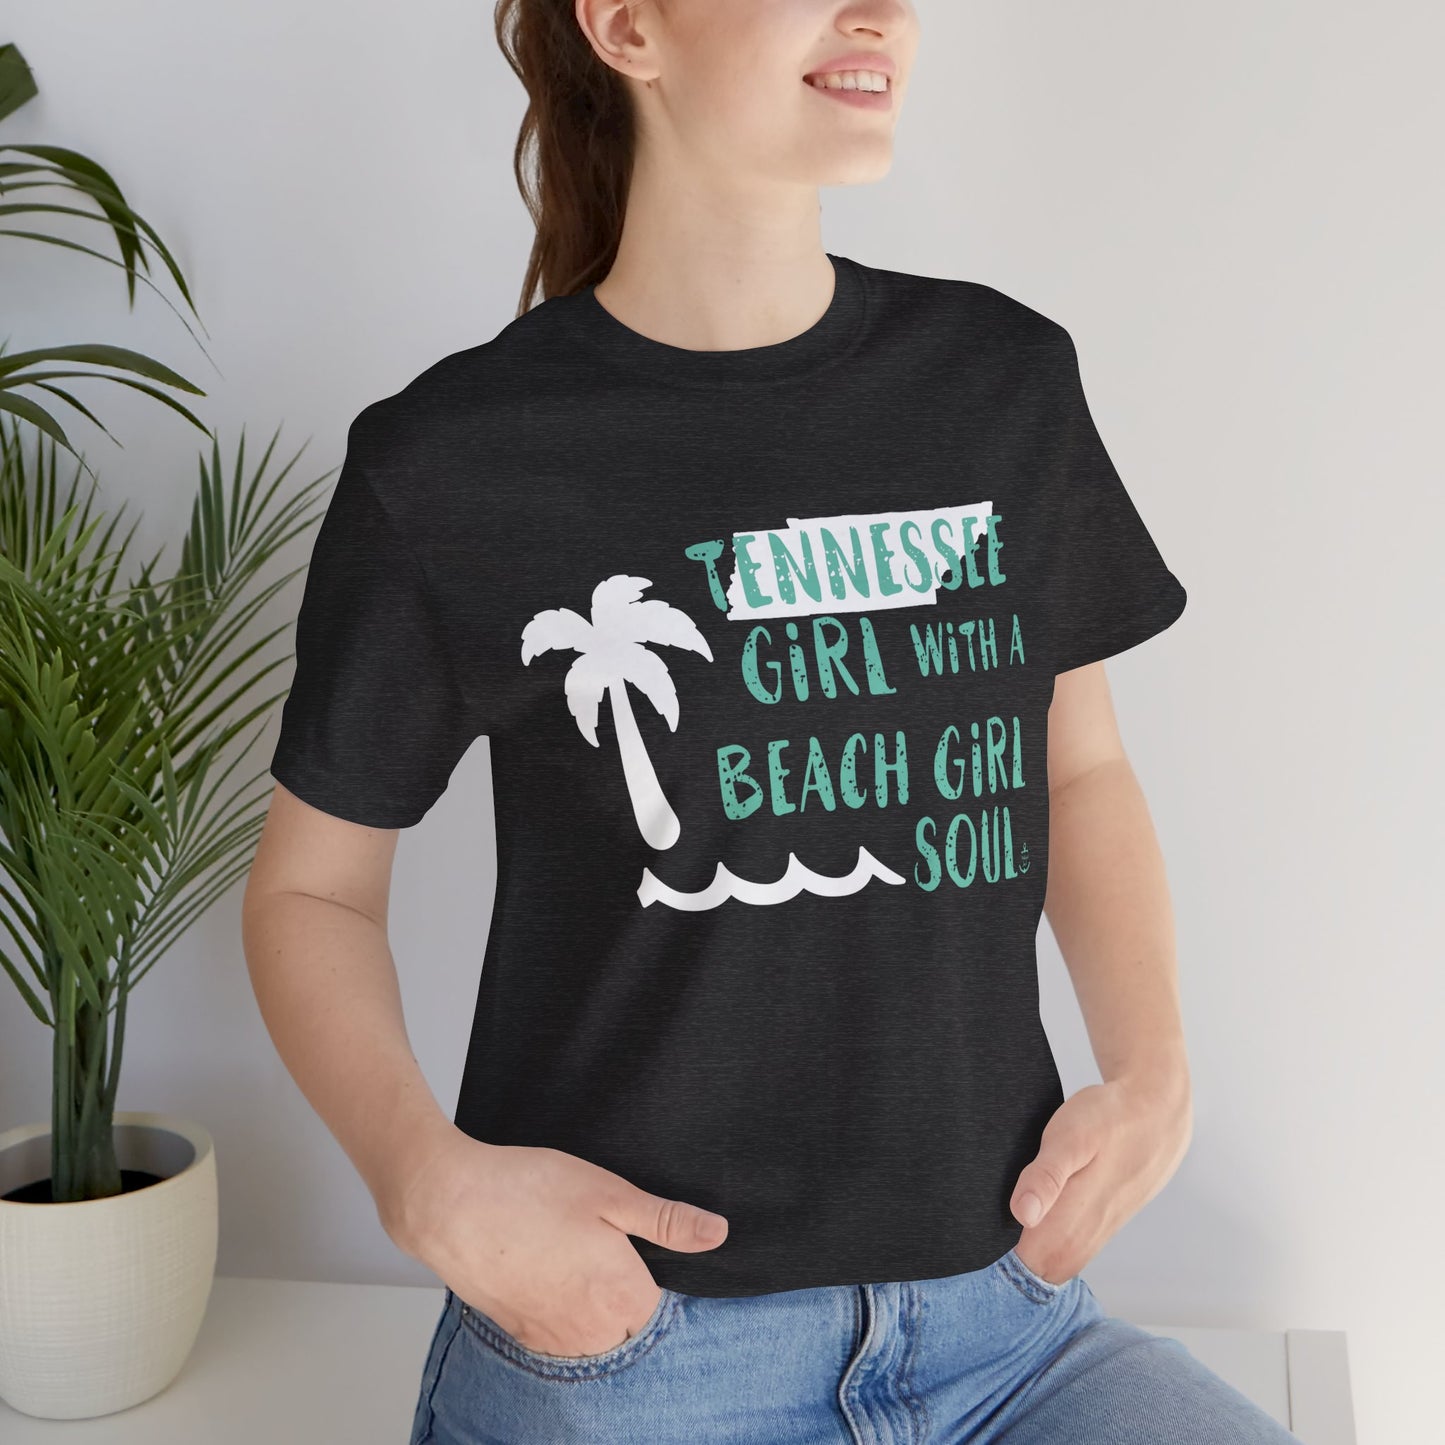 Tennessee girl tshirt, beach tshirt, beach girl, Christmas gift, tshirts for women, Anchored Soul Tshirt